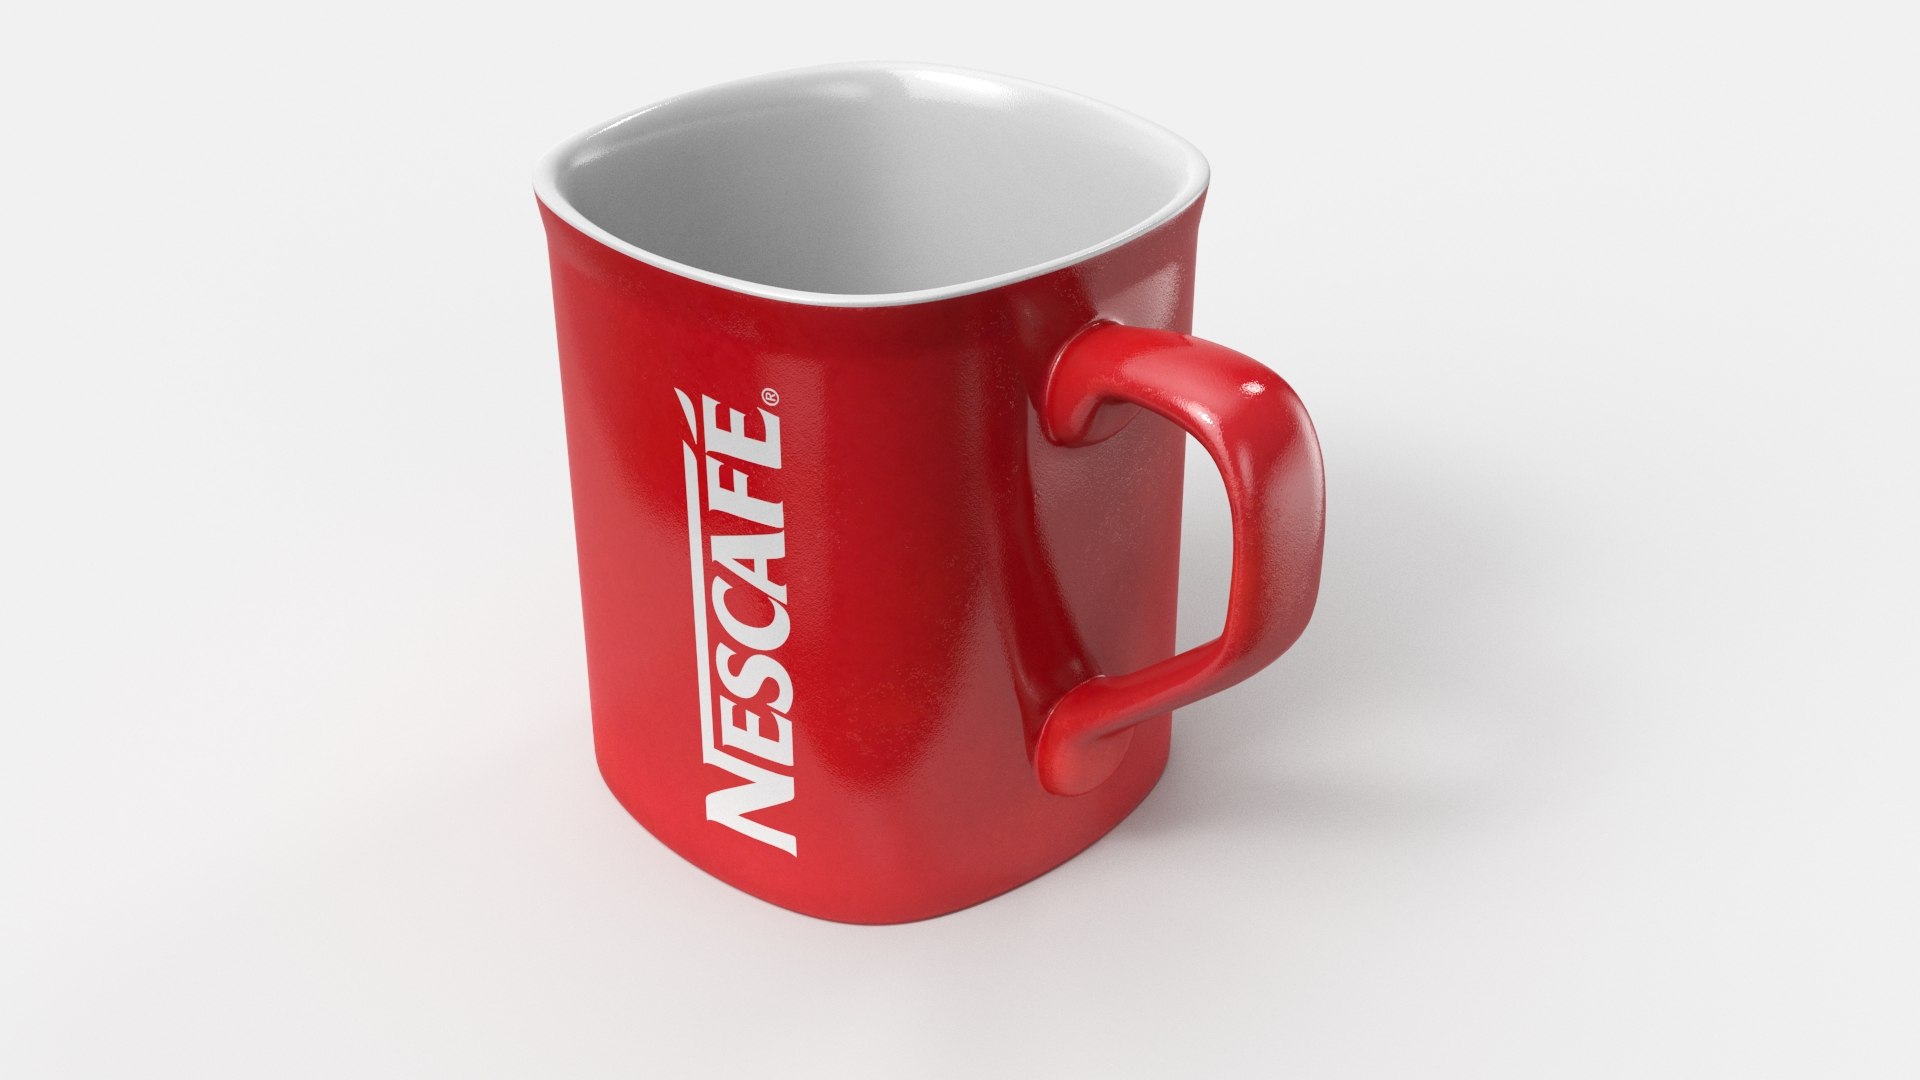 Vintage Red Blender Coffee Mug by CSA Images - Pixels